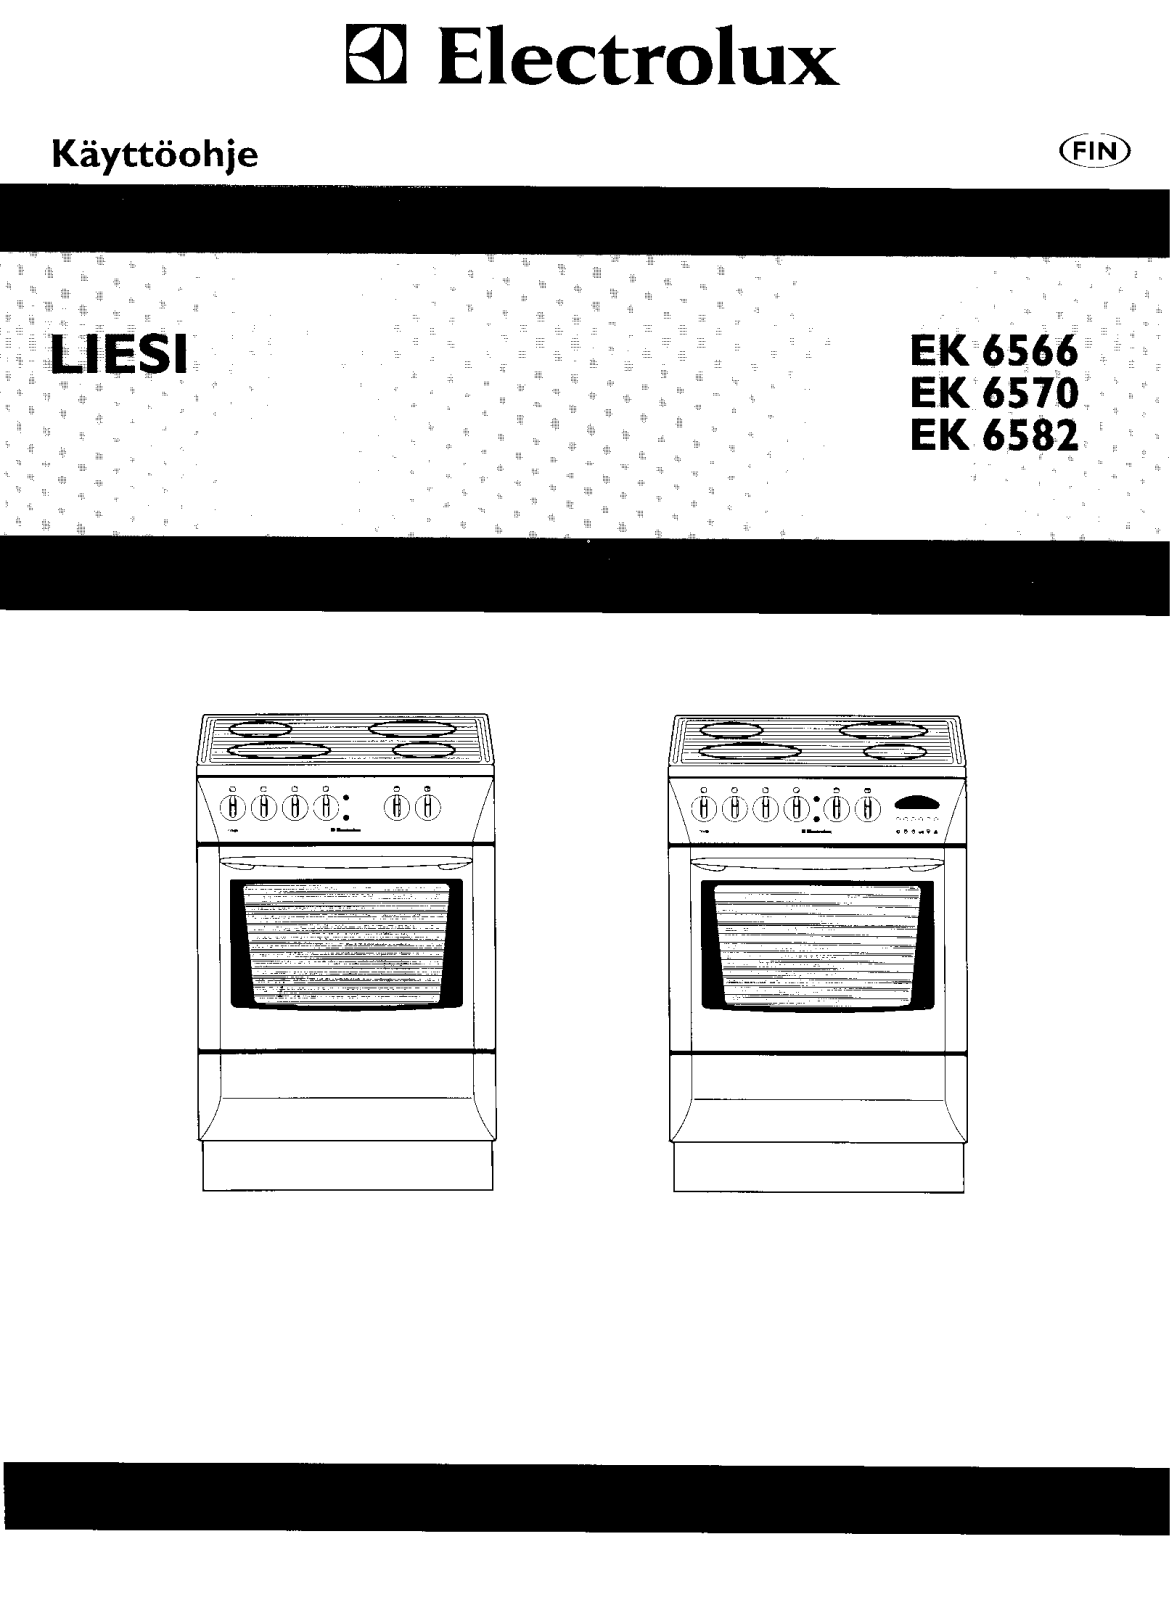 Electrolux EK6582, EK6570, EK6566 User Manual